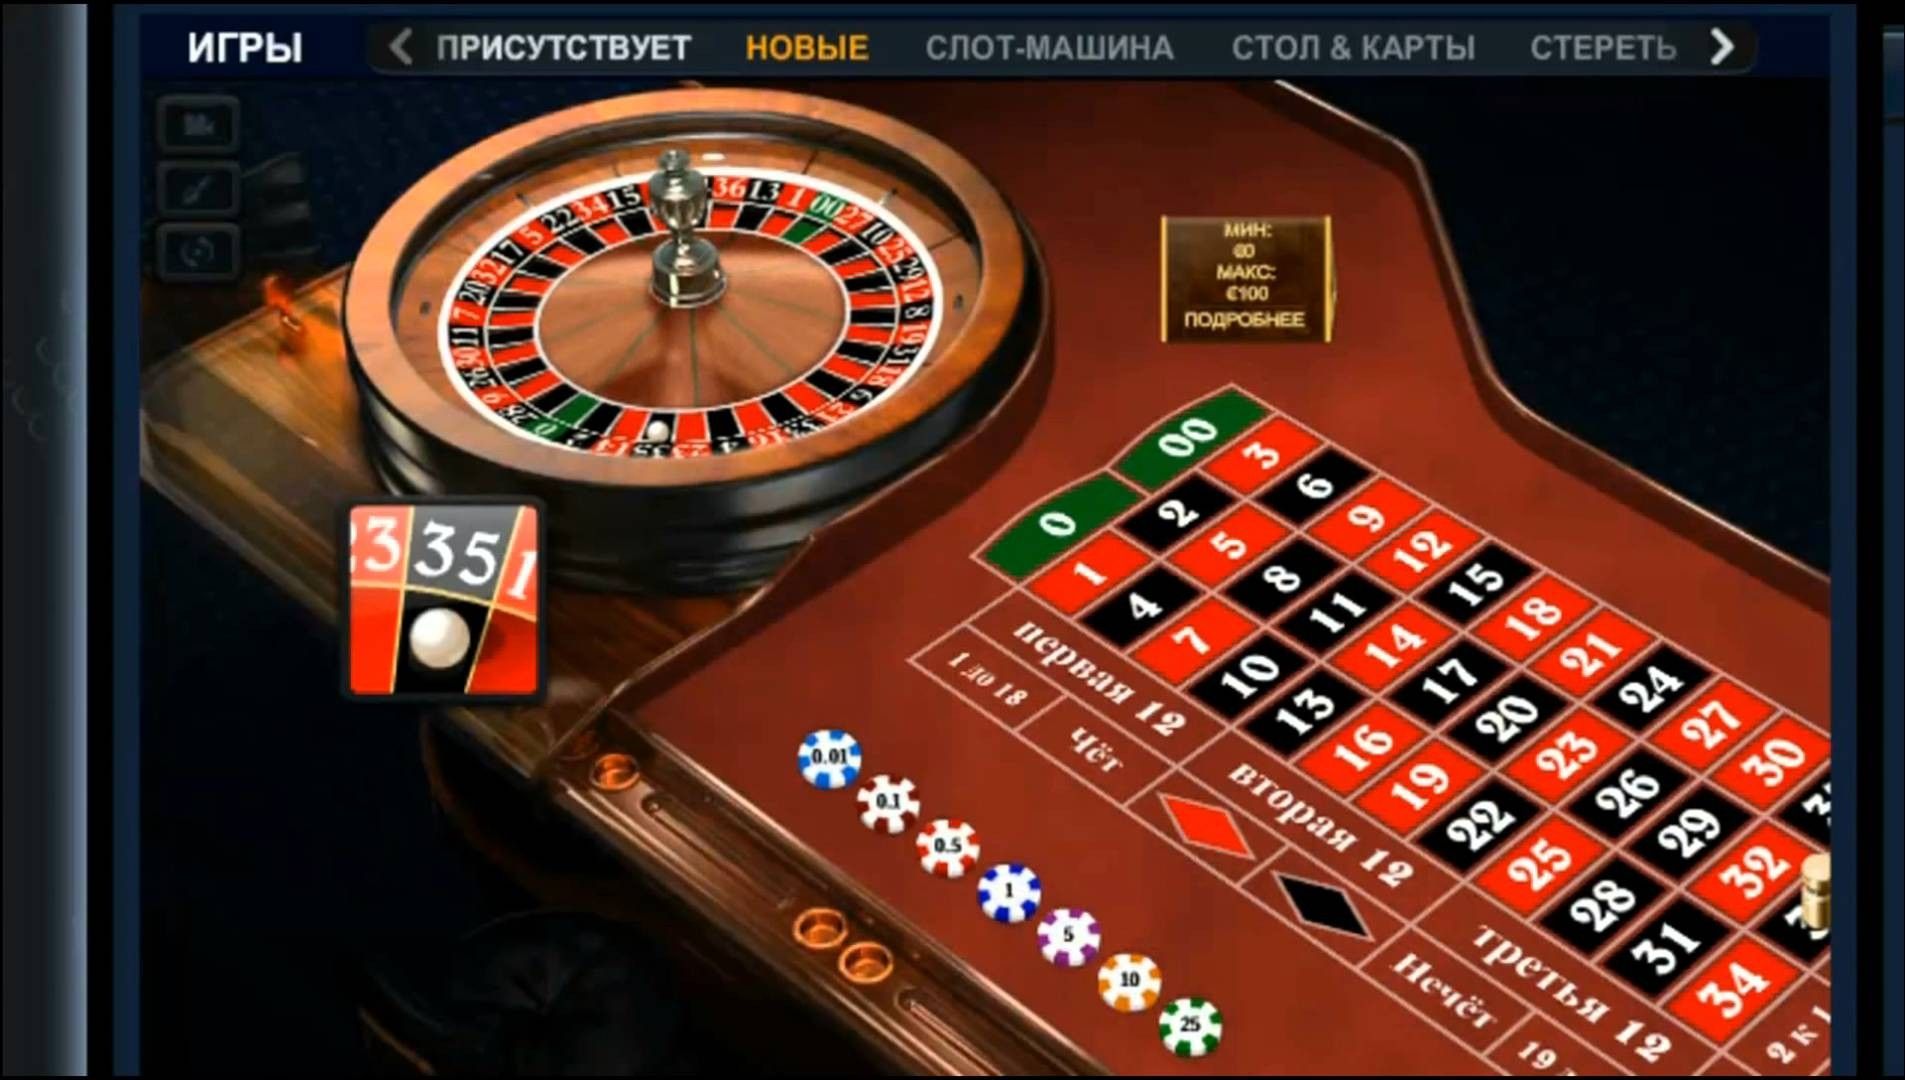 Вулкан казино онлайн рулетка проверить билет столото 4 из 20 по номеру билета и тиражу